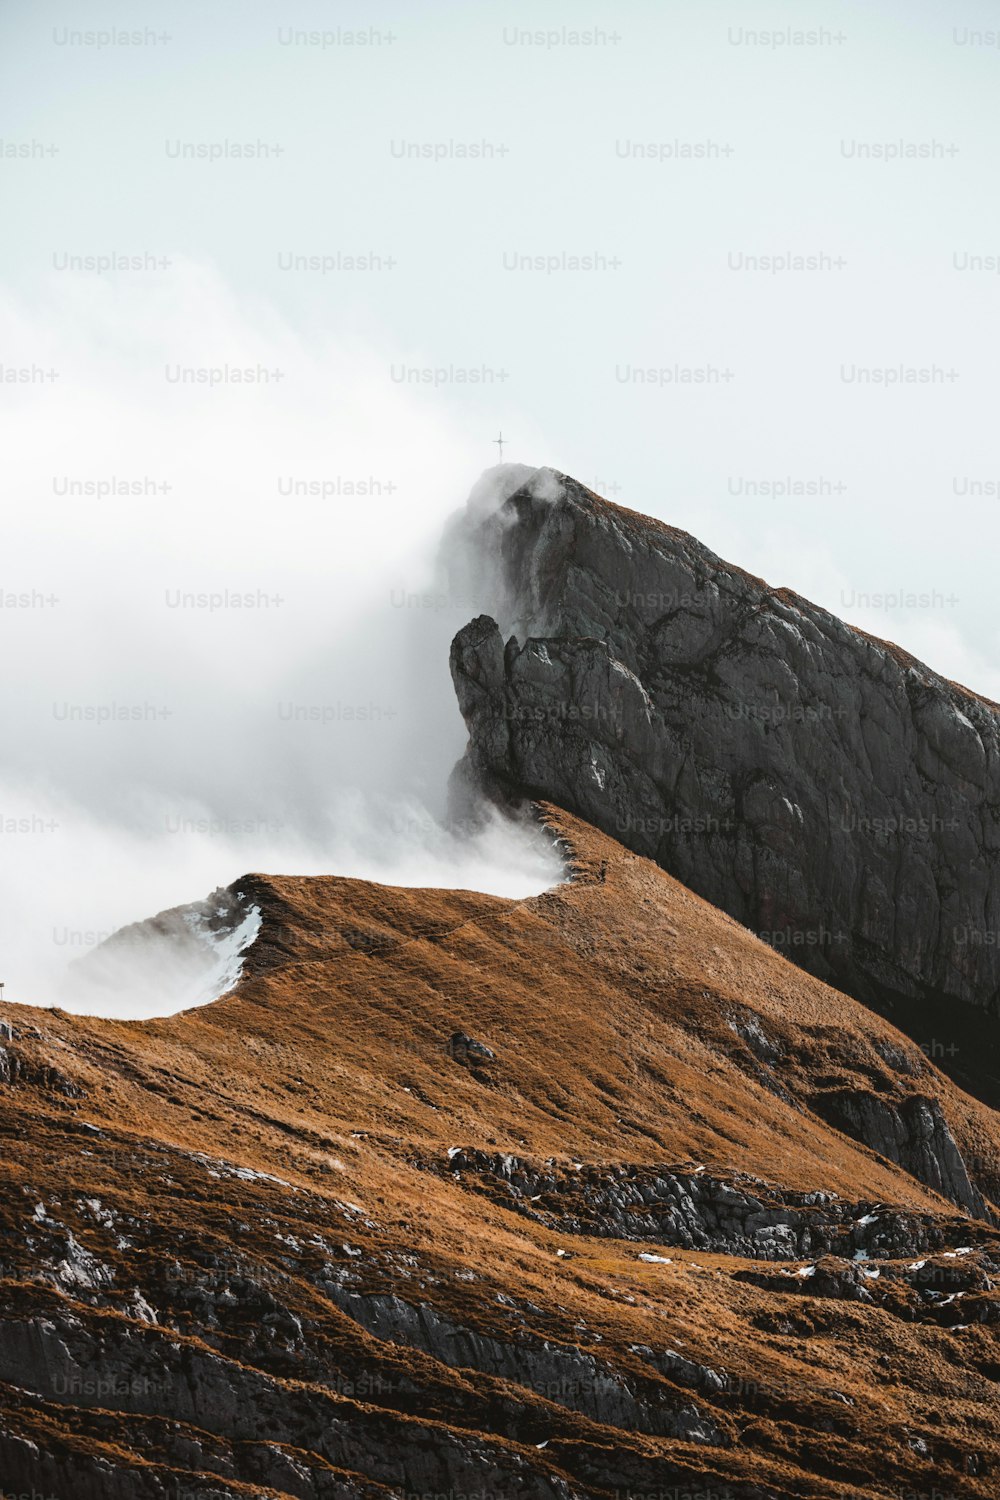 una persona in piedi sulla cima di una montagna con una tavola da surf